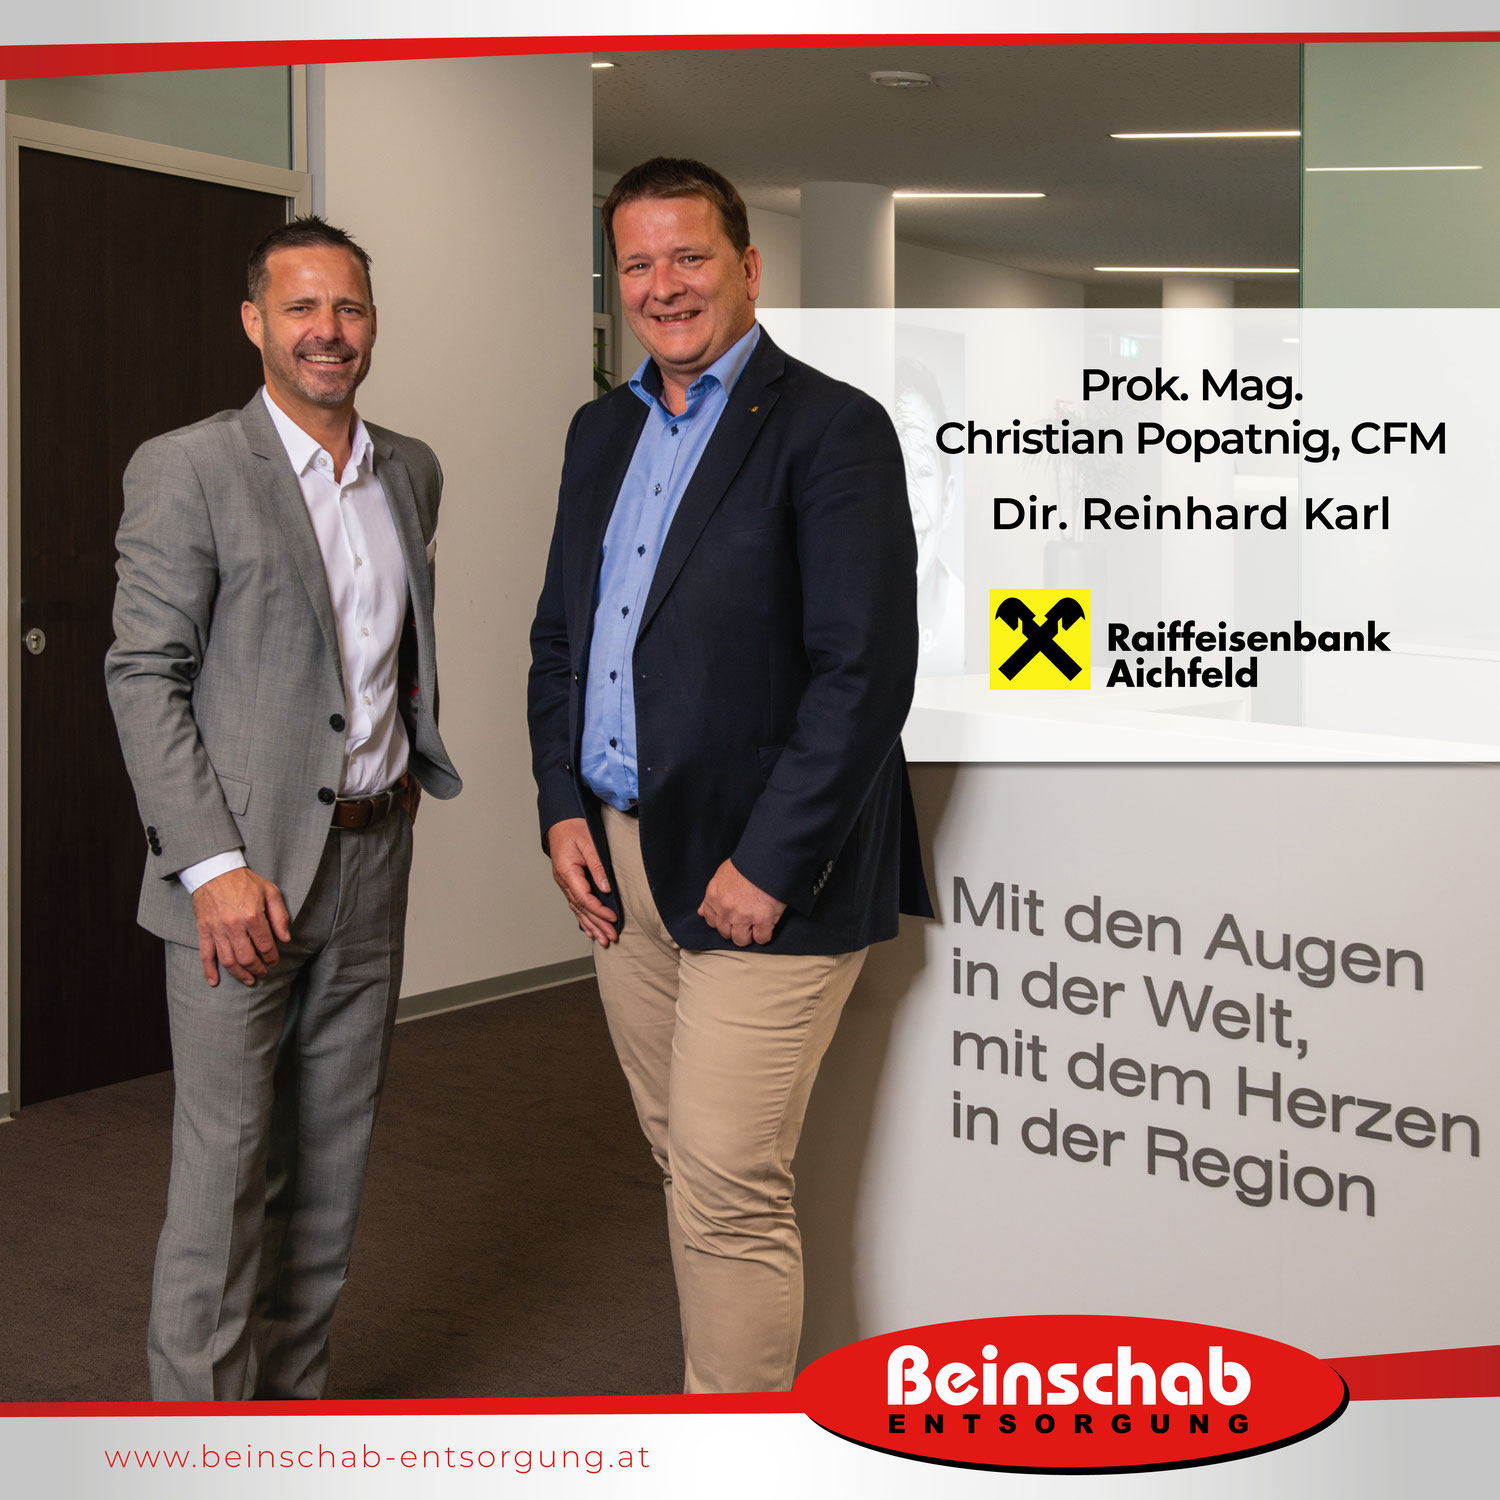 Prok. Mag. Christian Popatnig, CFM und Dir. Reinhard Karl von der Raiffeisenbank Aichfeld im Interview